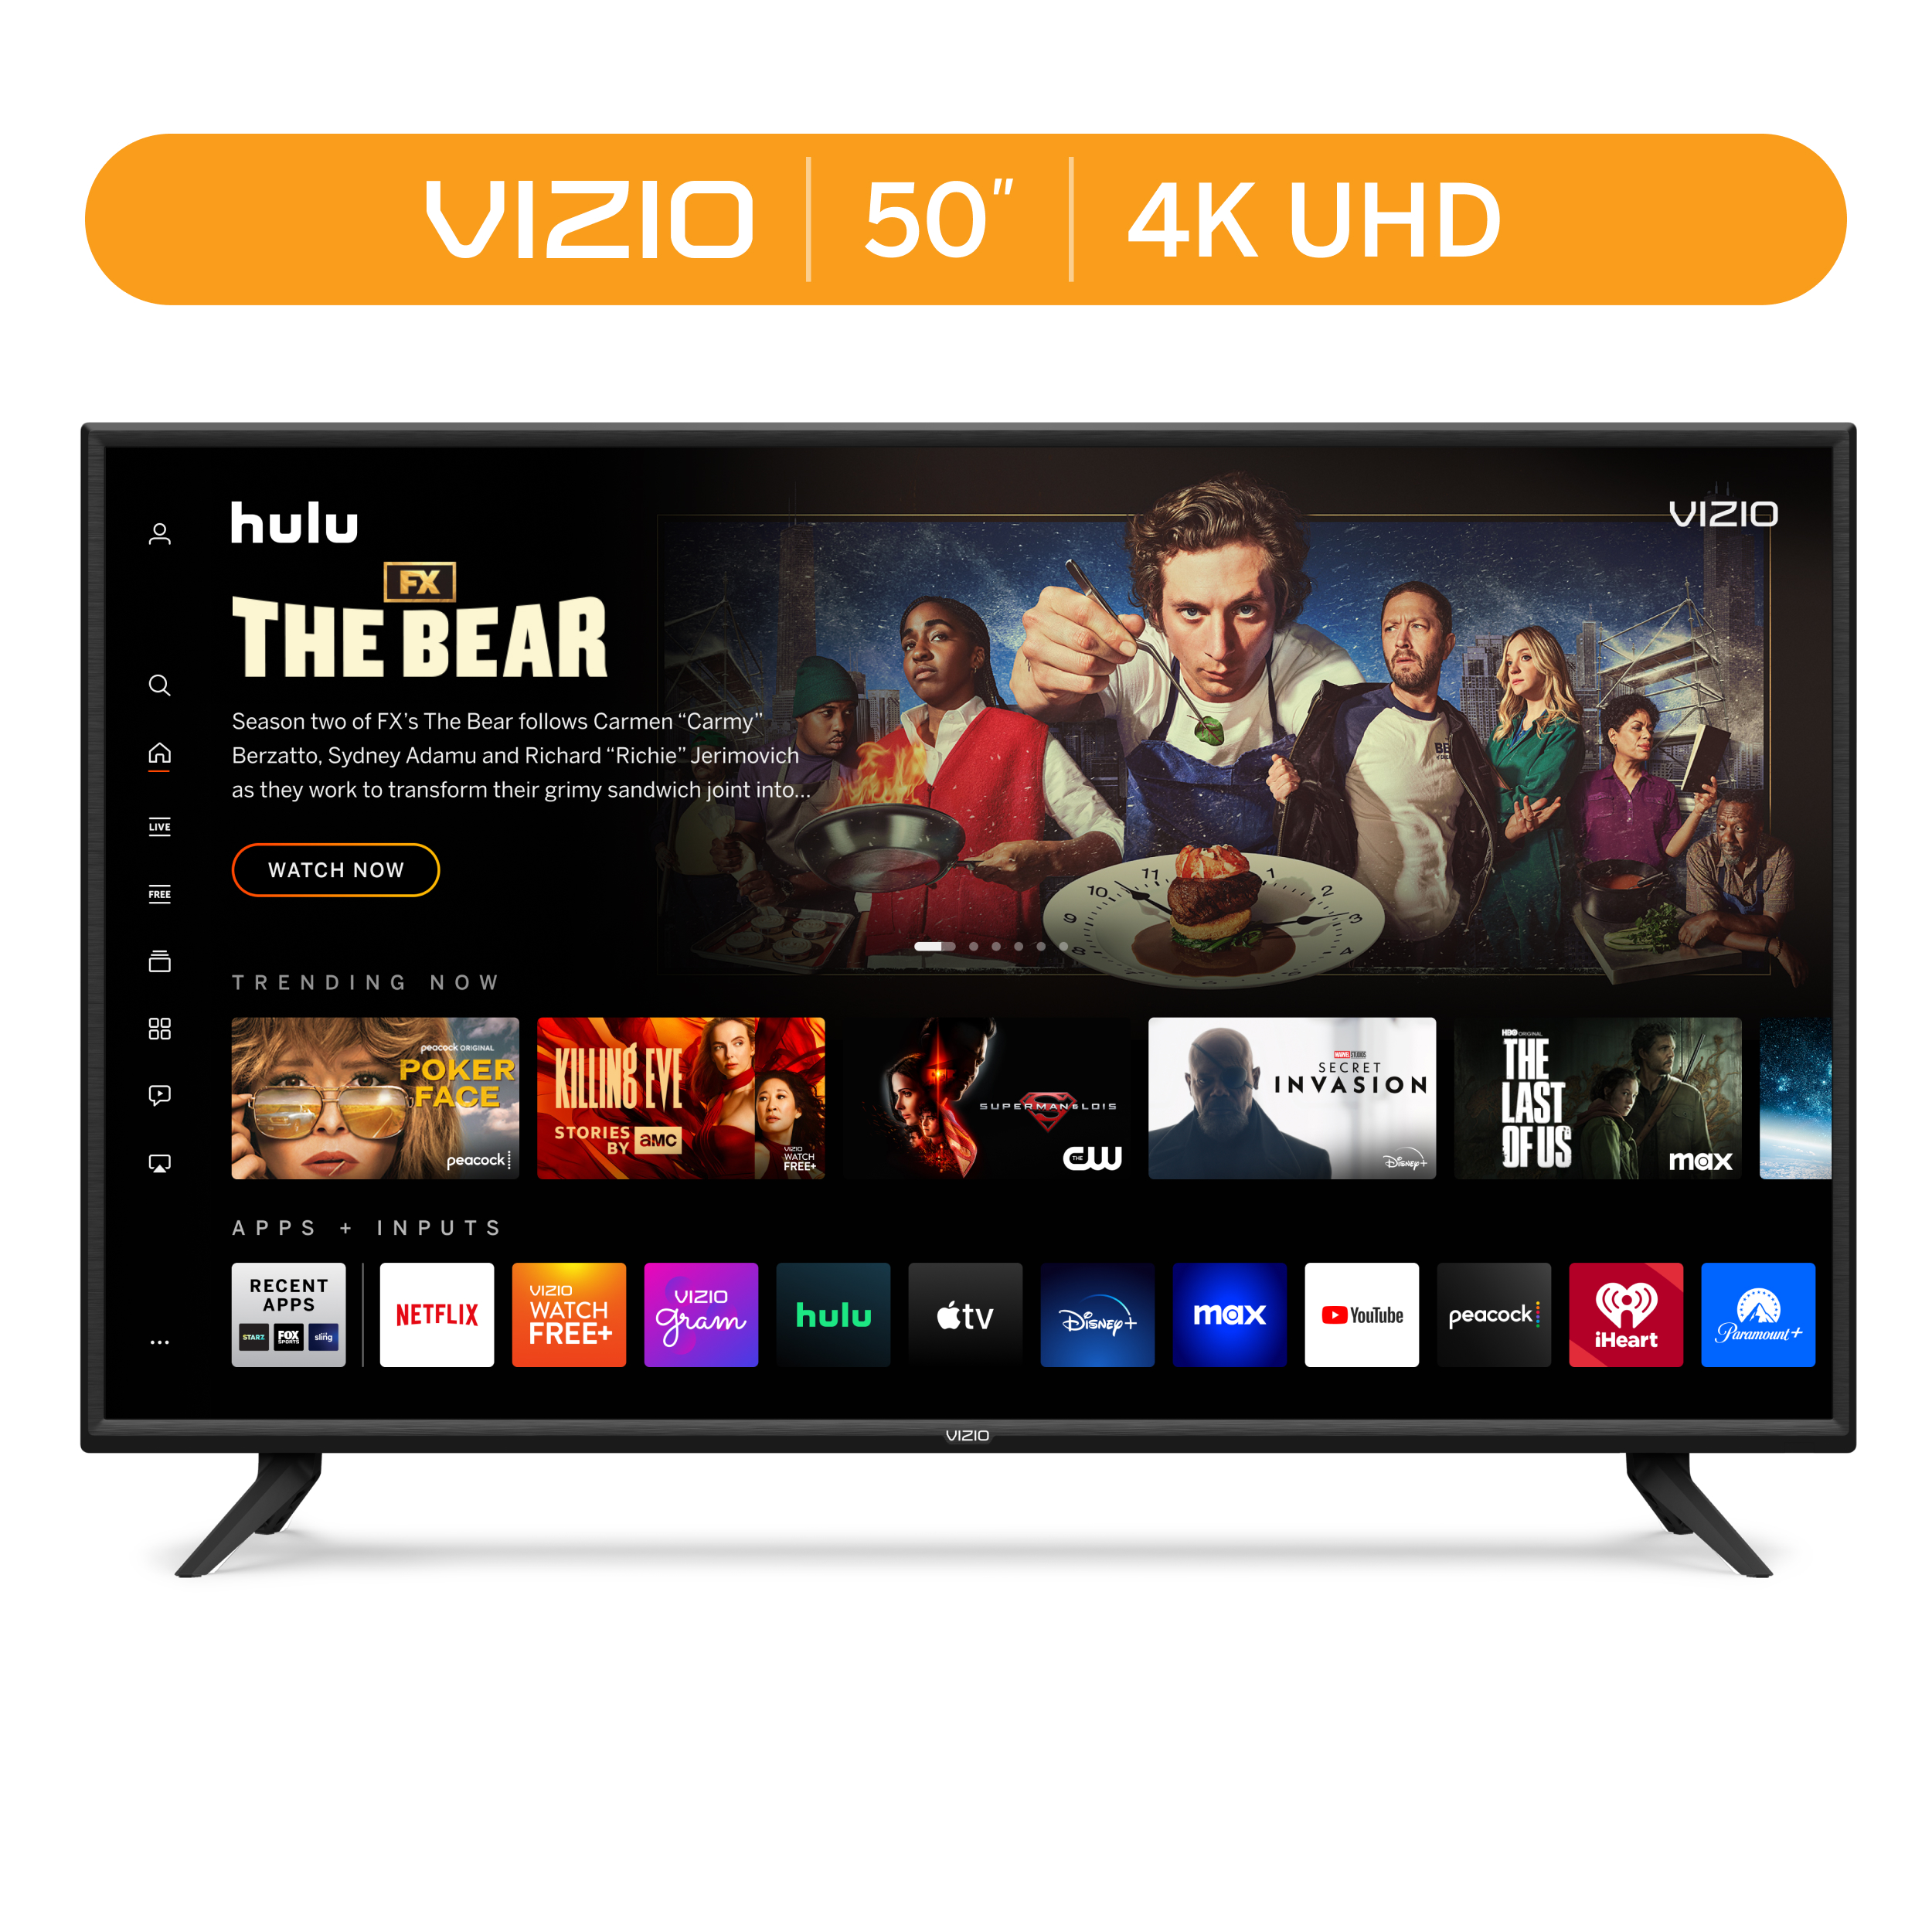 VIZIO 50" Class V-Series 4K UHD LED Smart TV V505-J09 - image 1 of 20